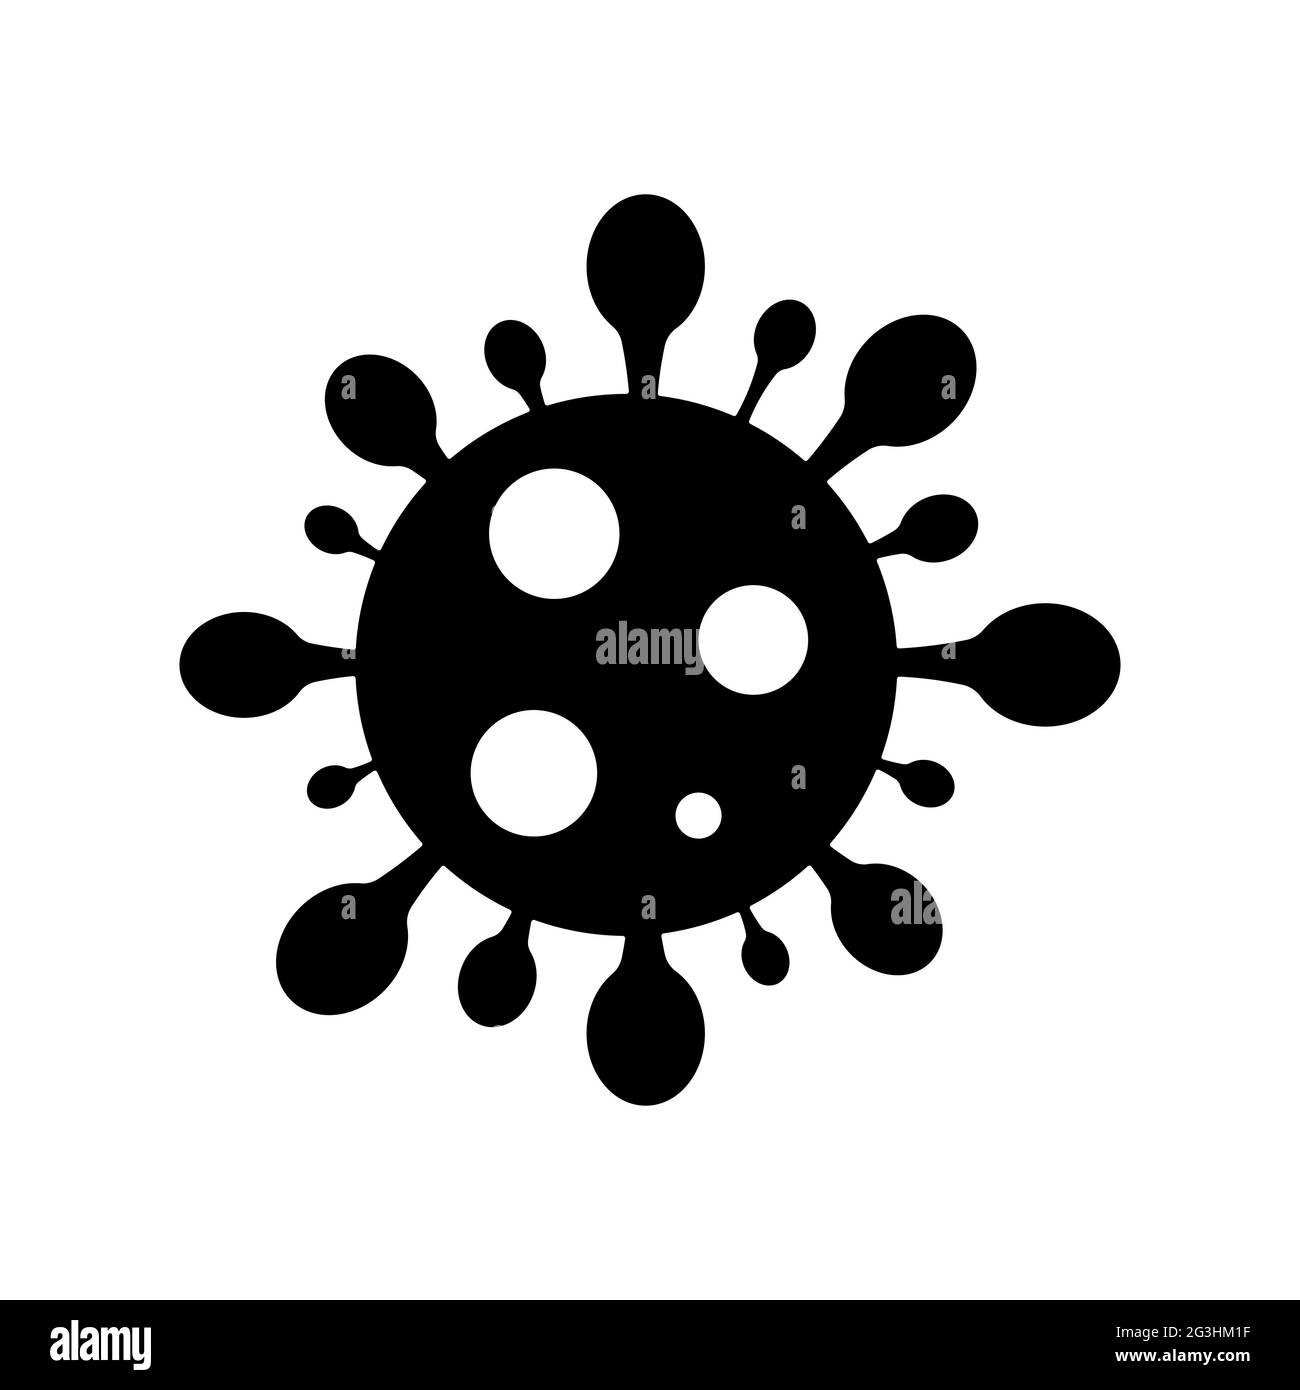 Icono del vector del coronavirus covid-19. Epidemia de gripe asiática en todo el mundo Ilustración del Vector